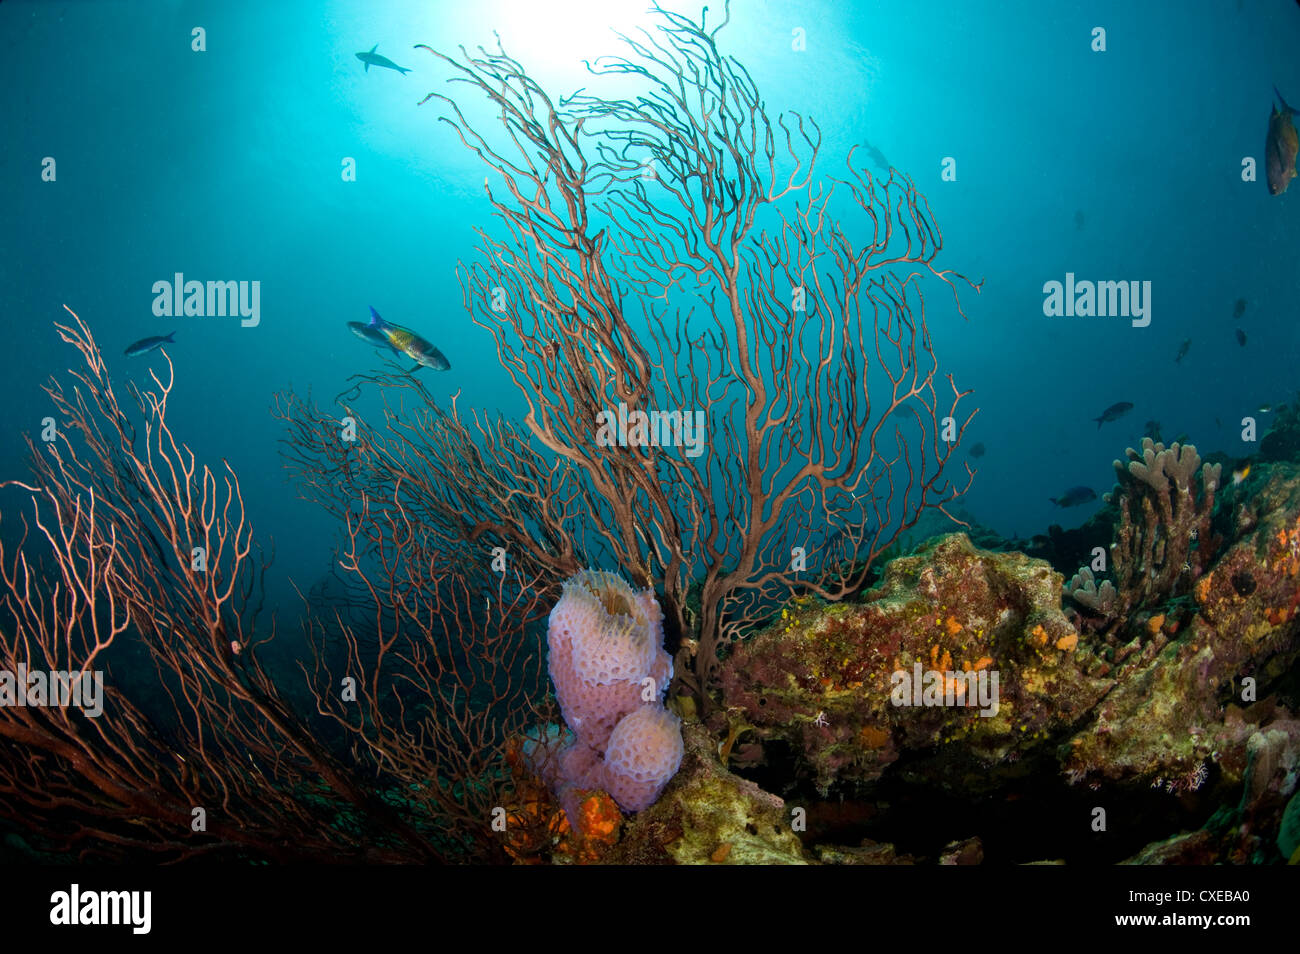 Scena sulla barriera corallina con fan corallo e vaso spugna, Santa Lucia, West Indies, dei Caraibi e America centrale Foto Stock